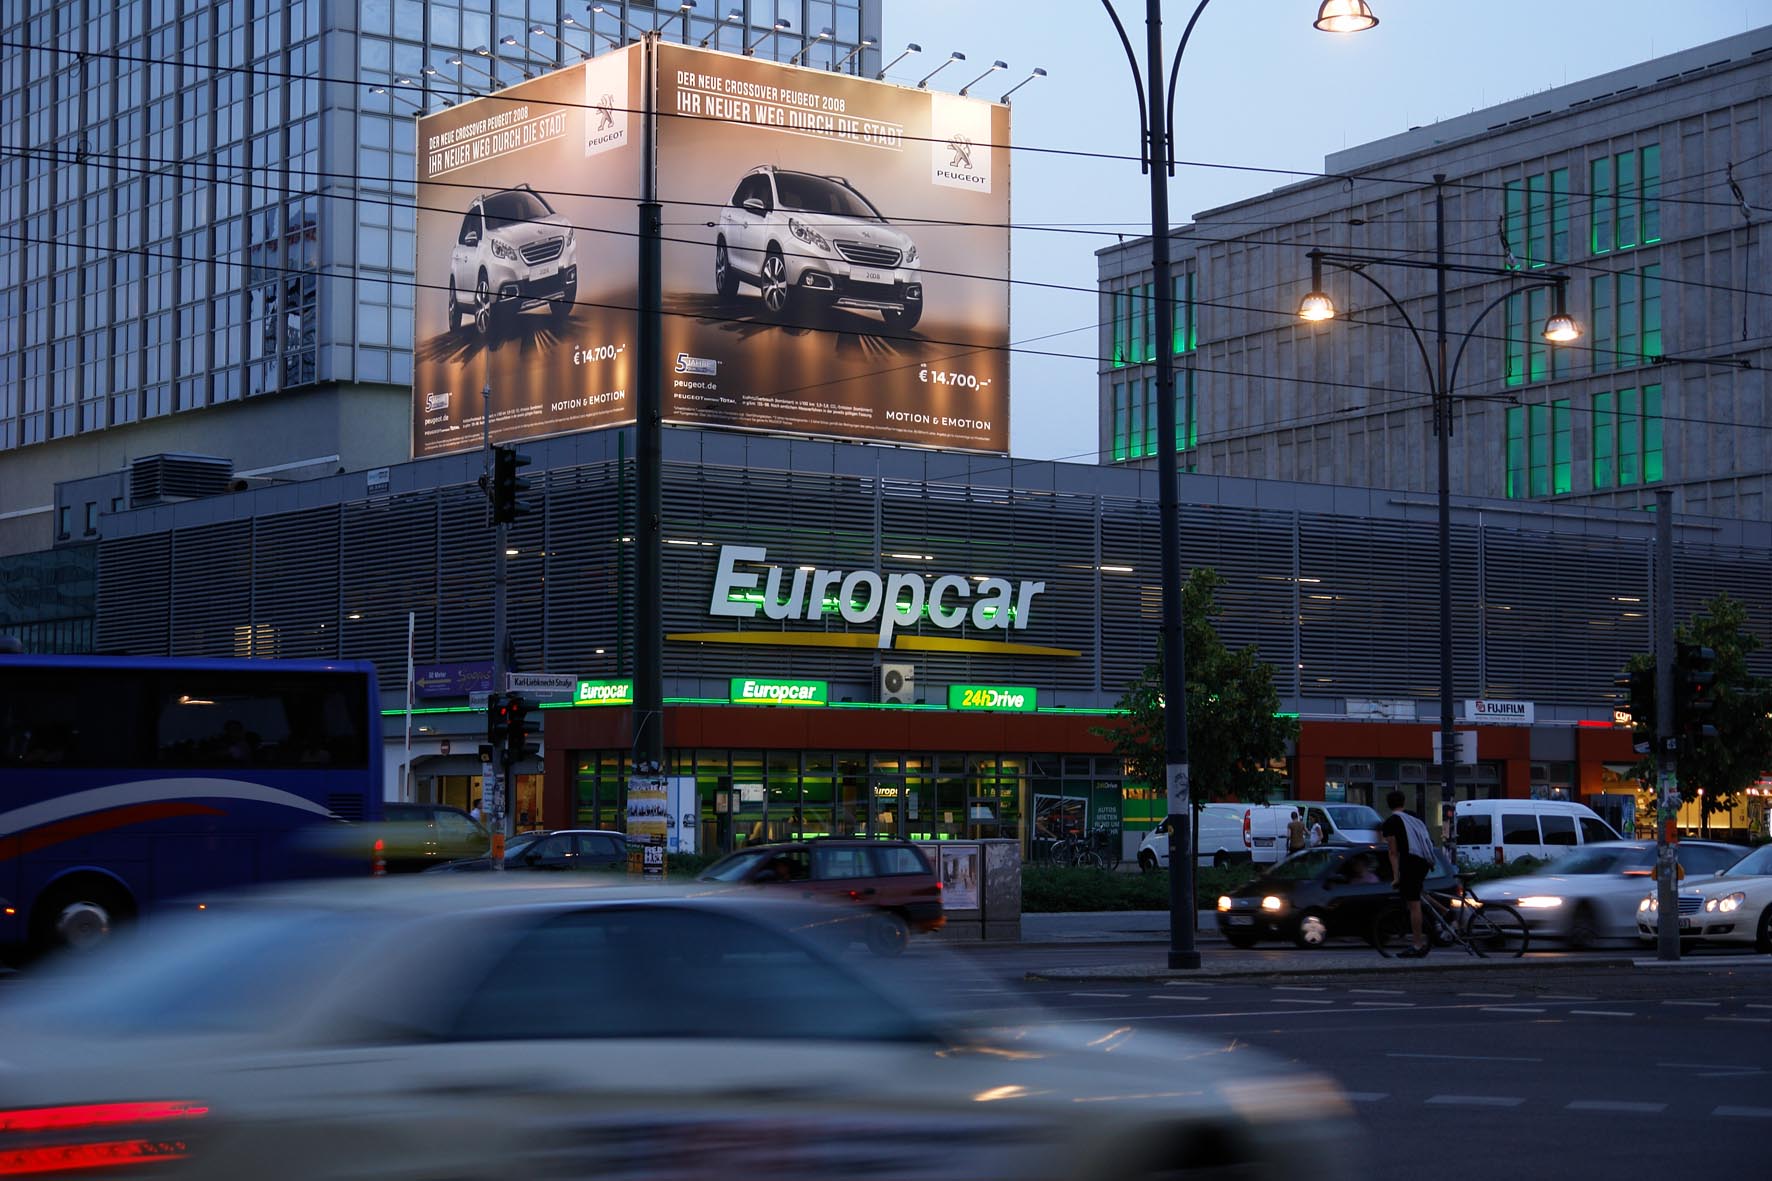 Peugeot Riesenposter in Berlin